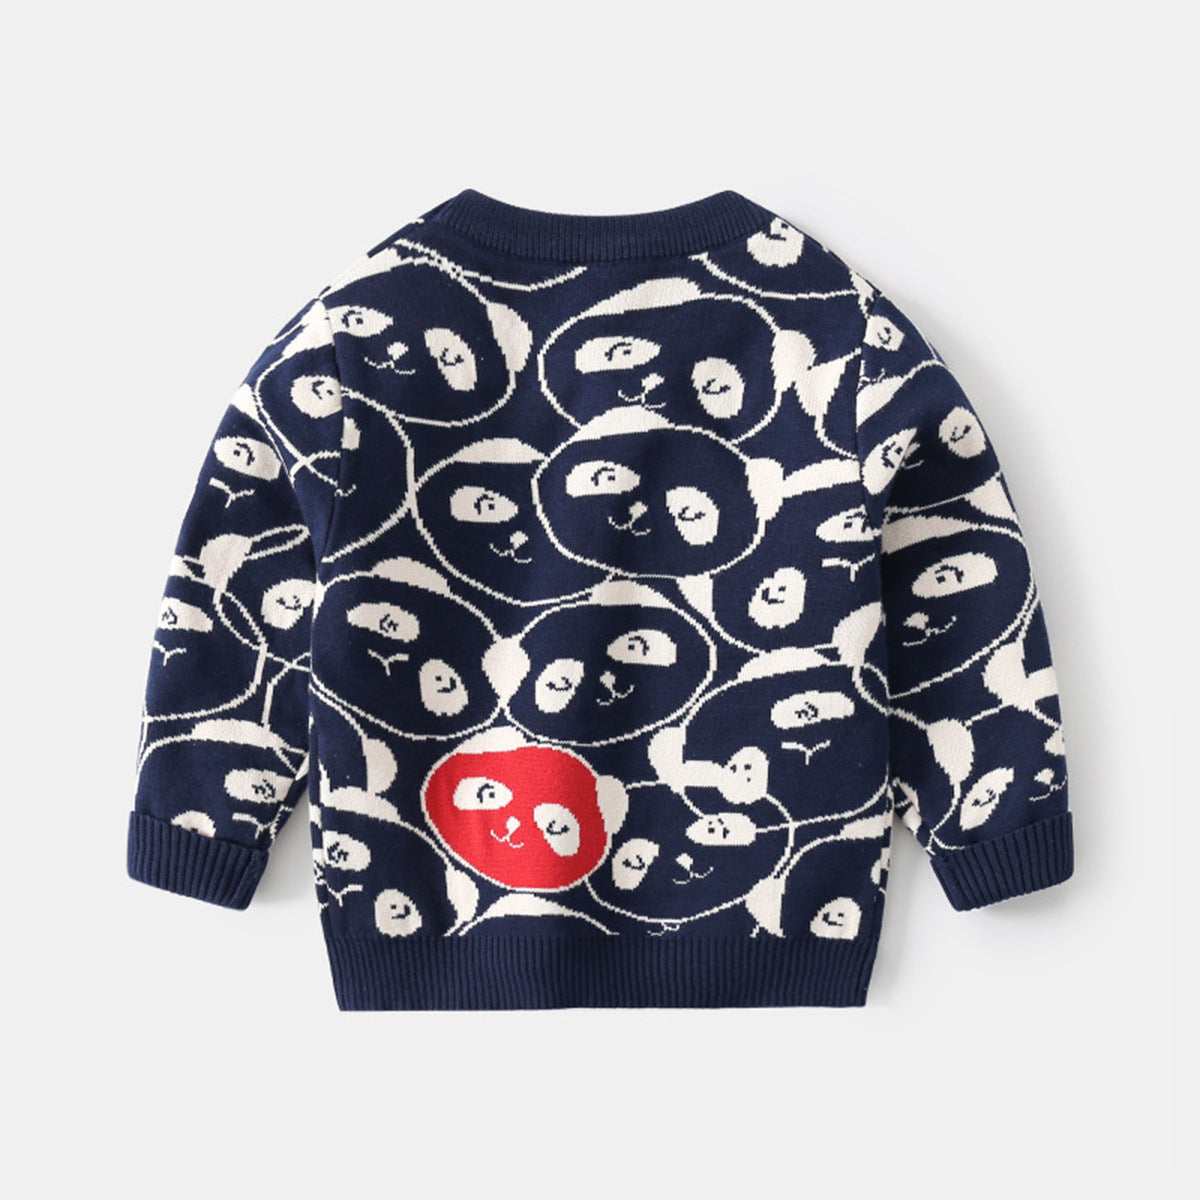 [513683] - Atasan Sweater Crewneck Lengan Panjang Import Anak Laki-Laki - Motif Panda Face